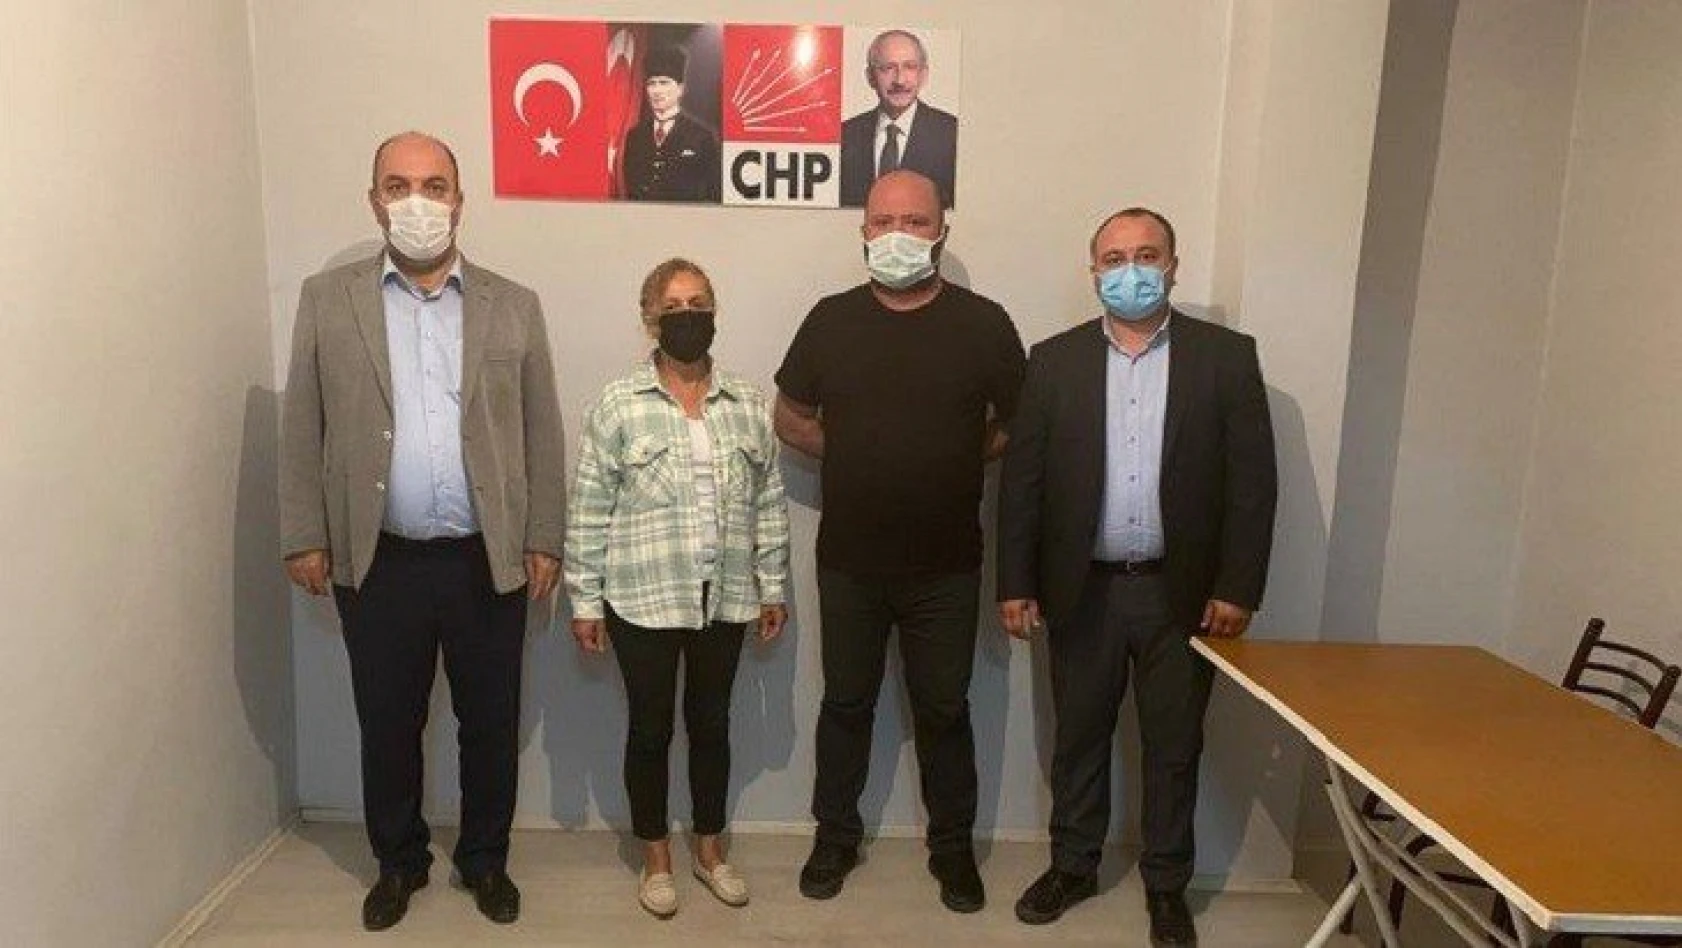 CHP Şenpazar İlçe Başkanlığı'nda bayrak değişimi